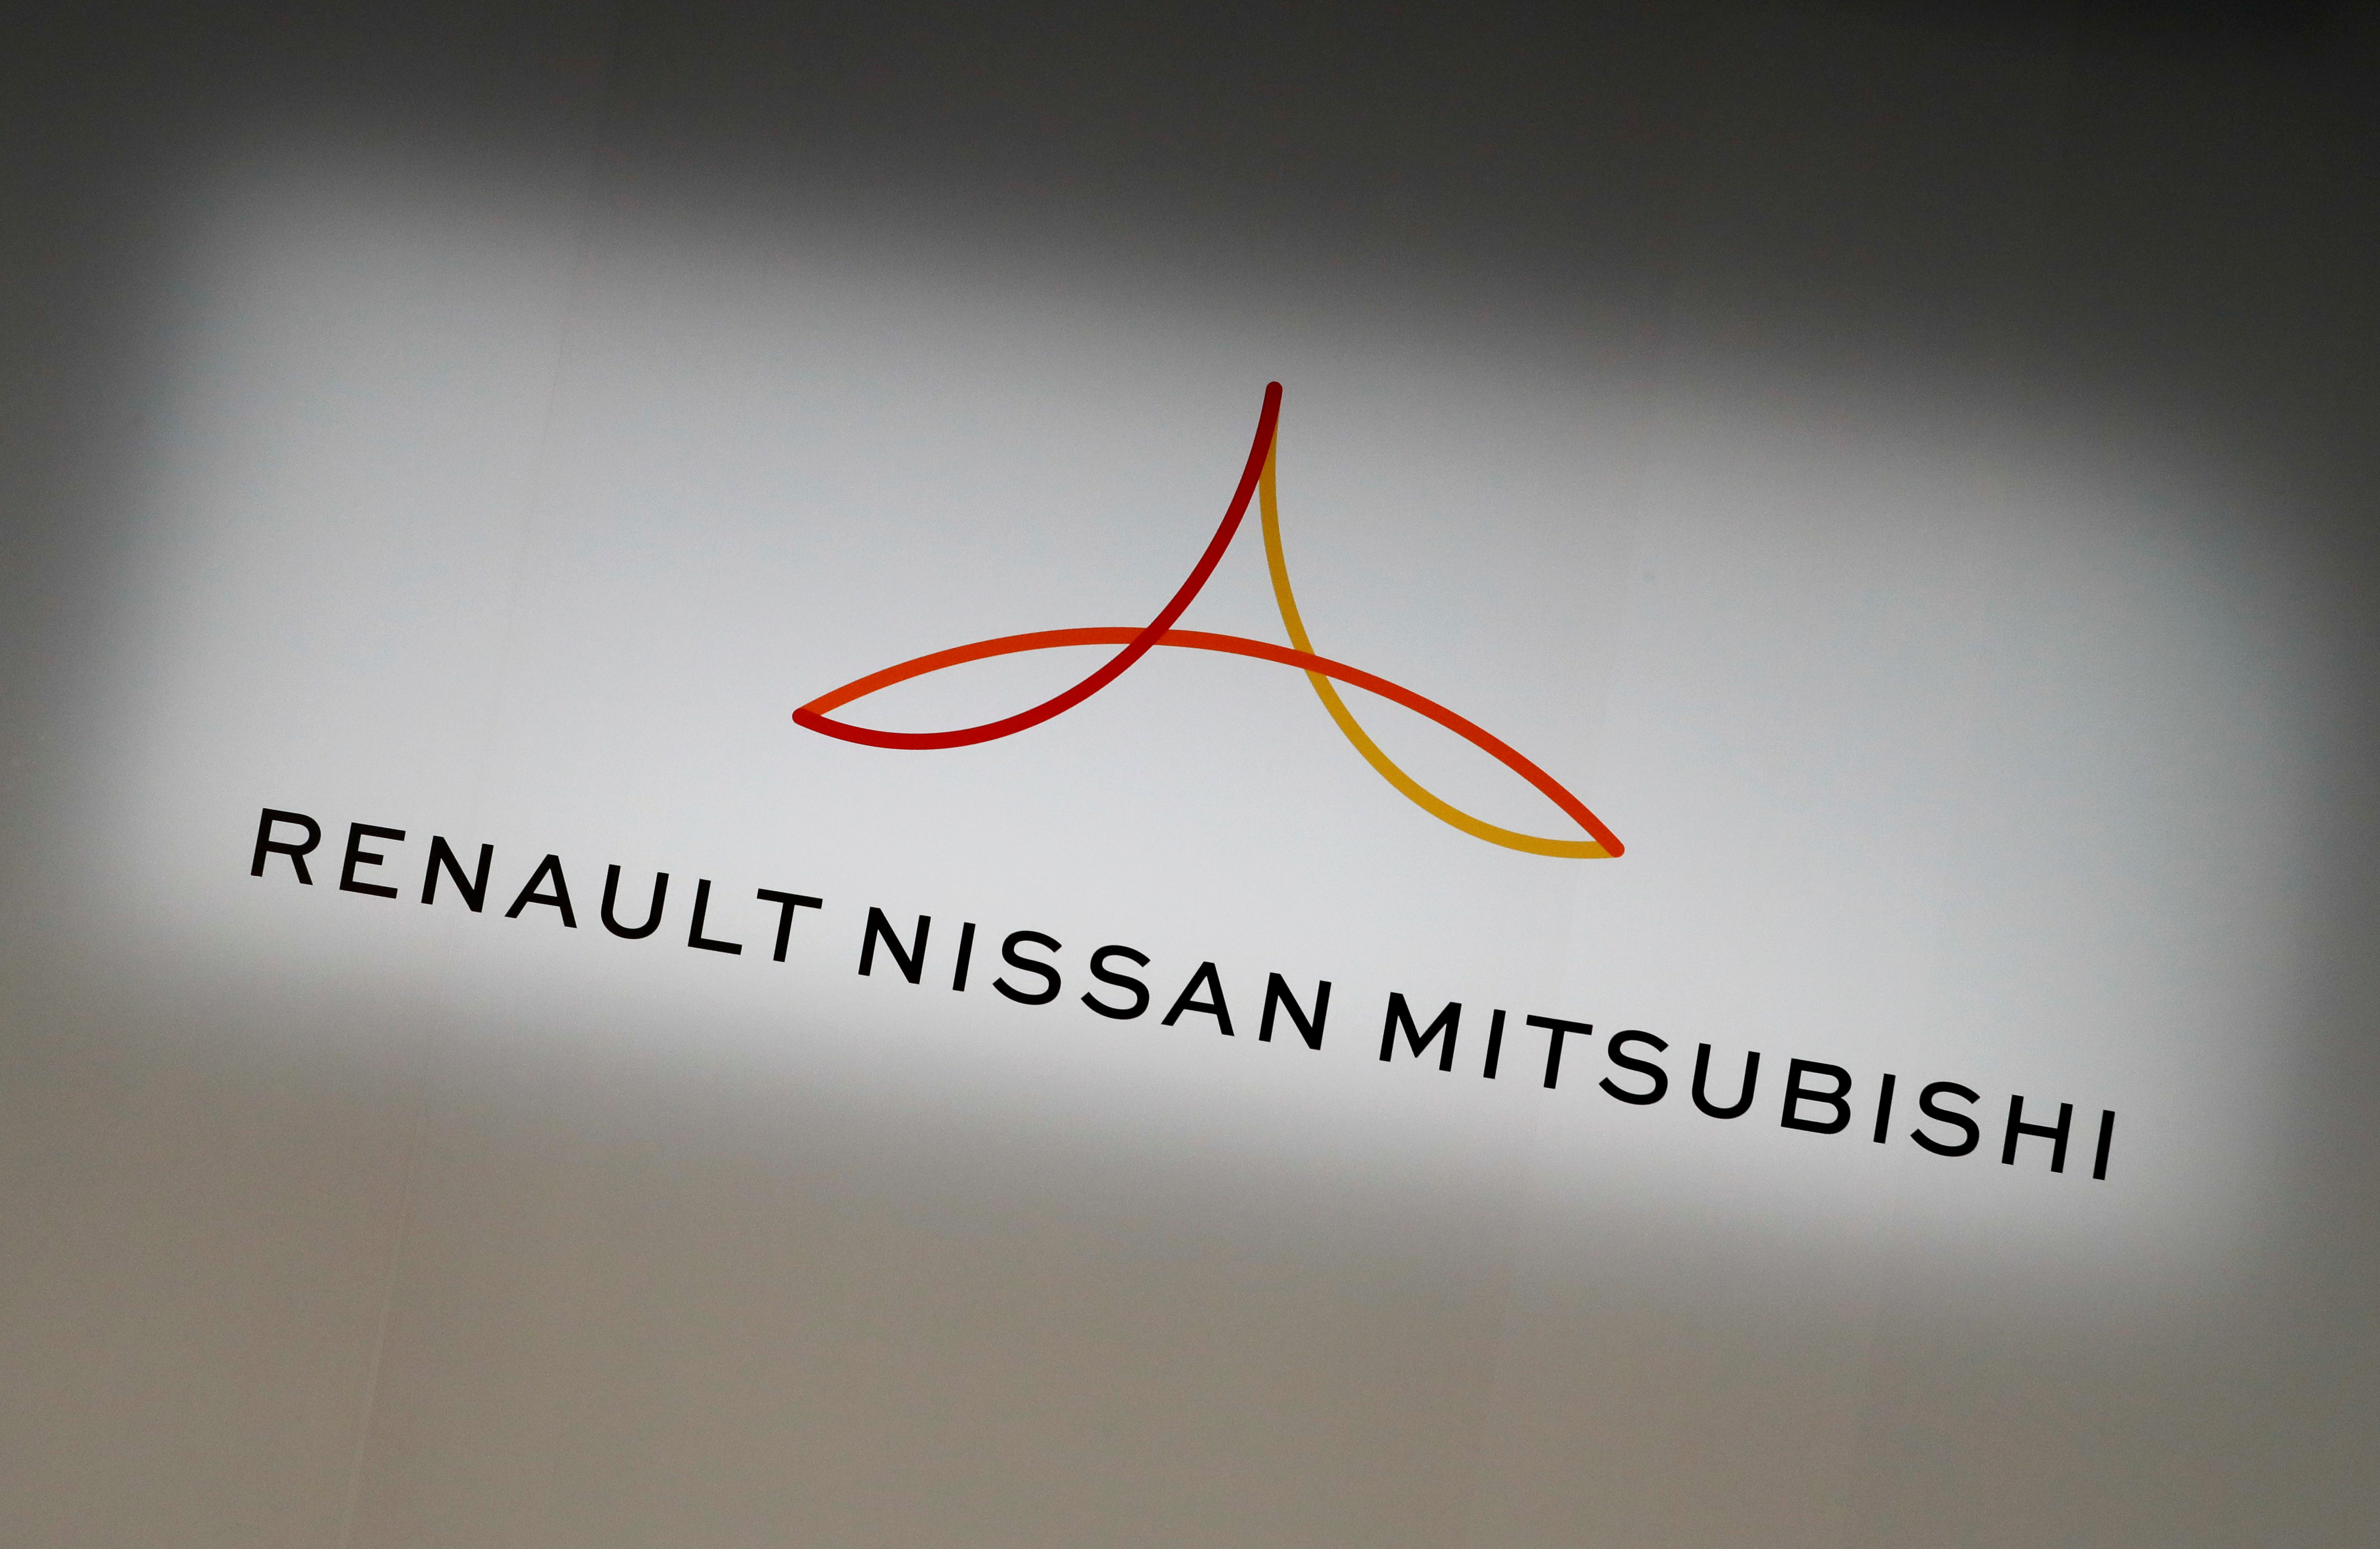 Renault-Nissan rééquilibrent leur alliance pour affronter les nouveaux défis du secteur automobile